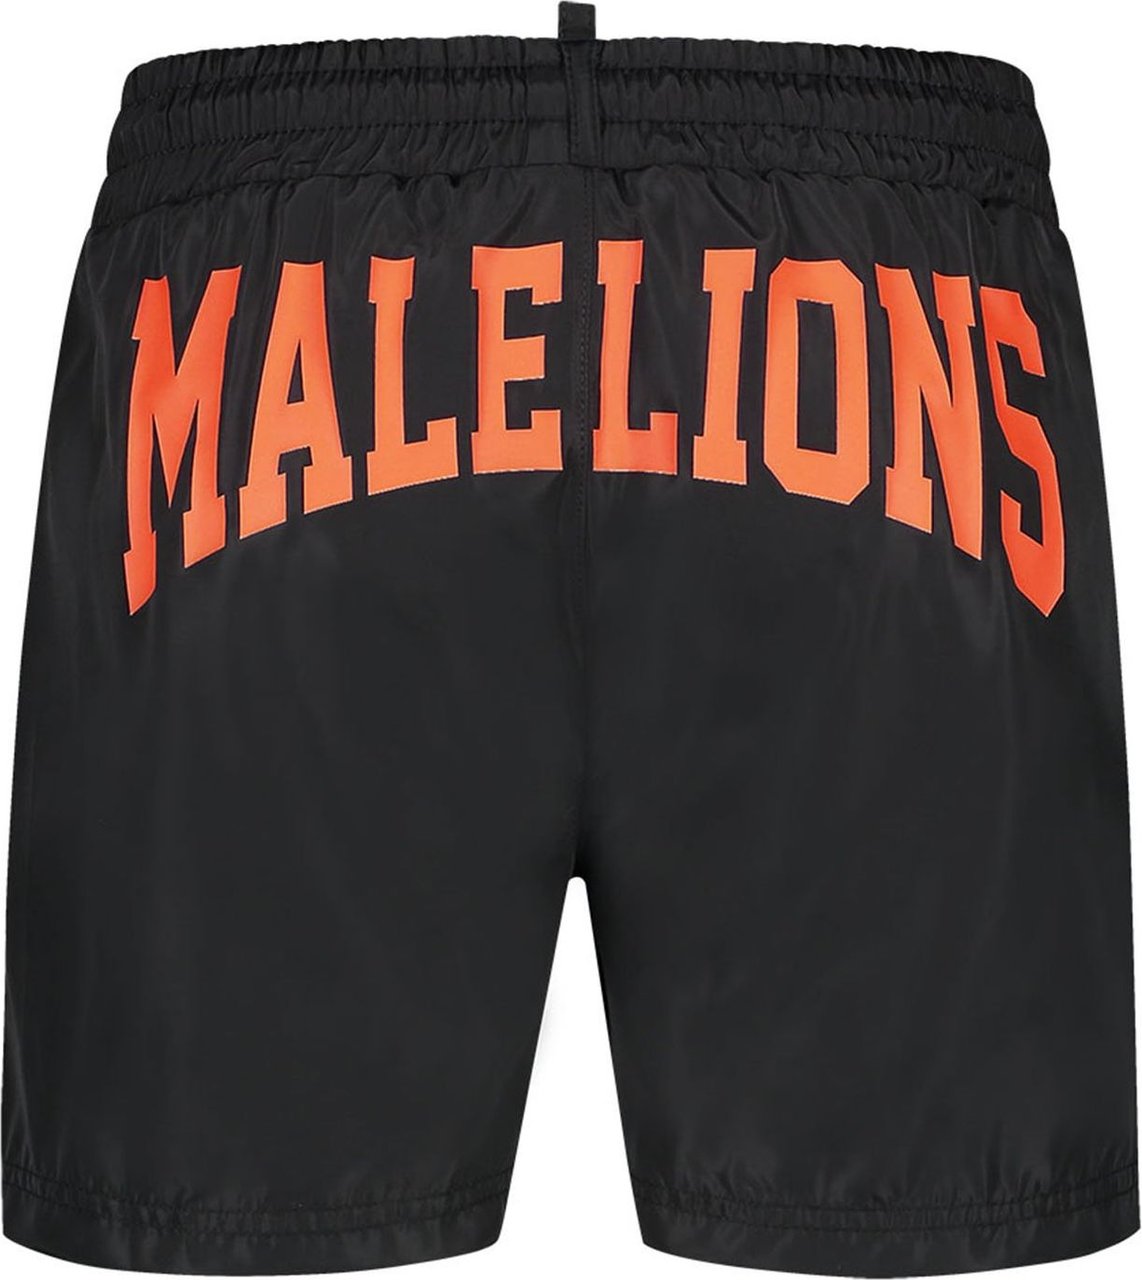 Malelions Men Boxer Swimshort - Black/Peach Zwart